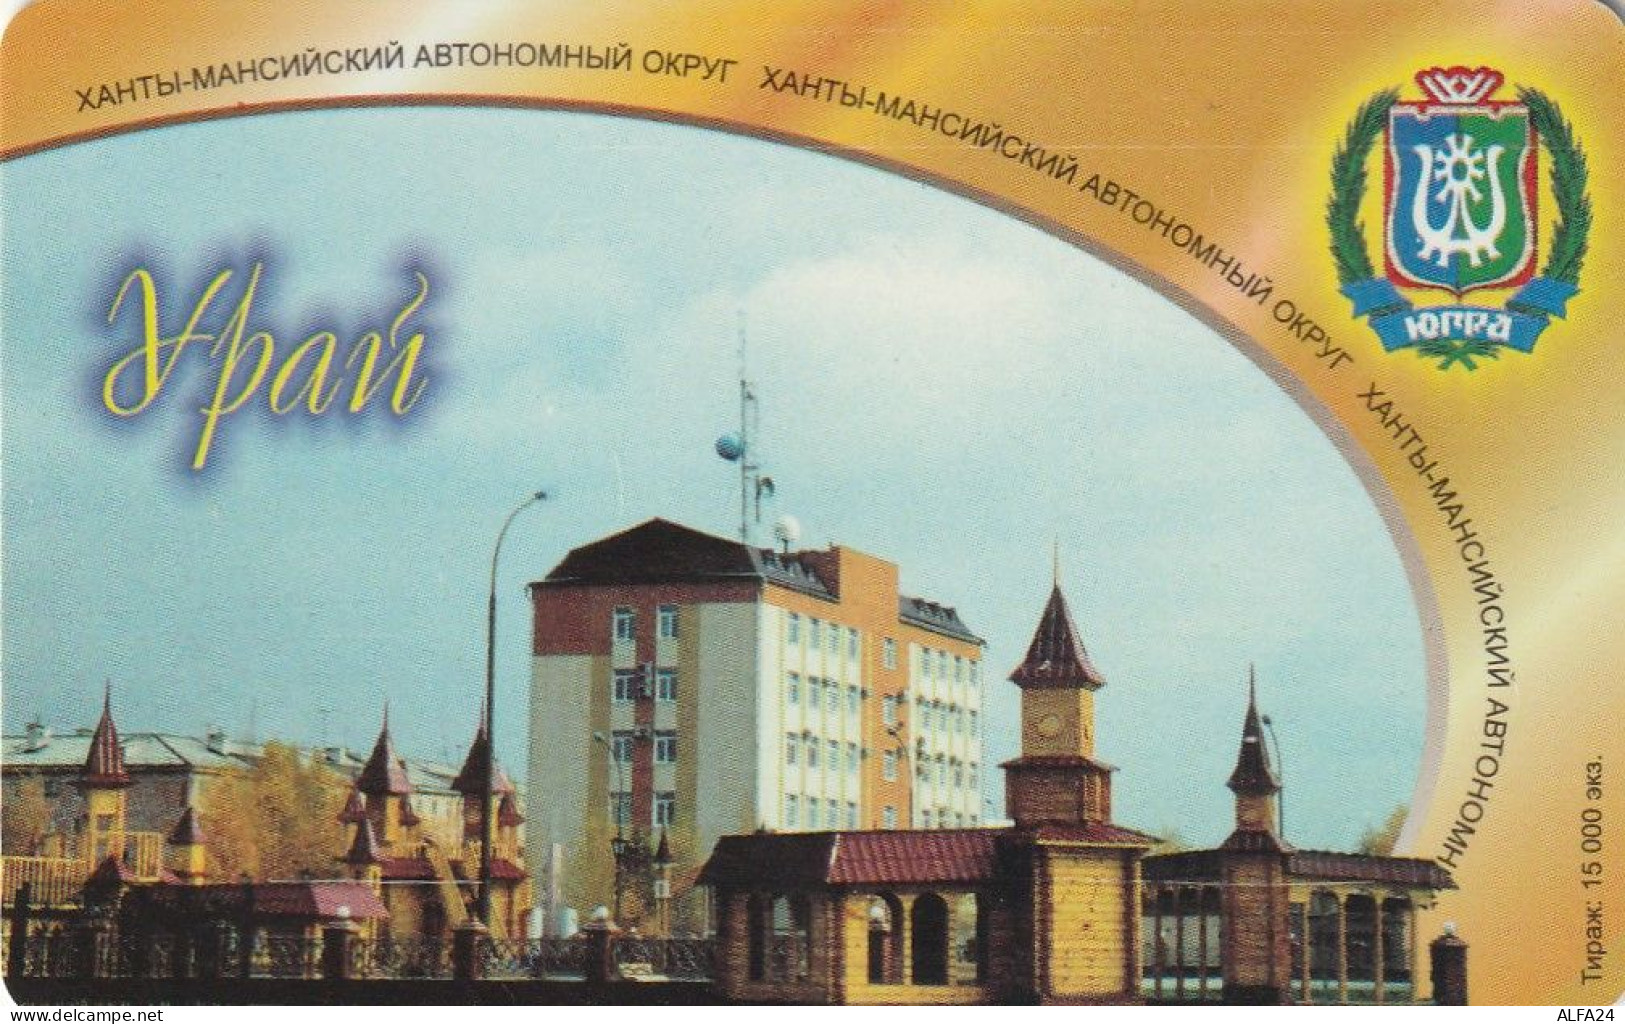 PHONE CARD RUSSIA Khantymansiyskokrtelecom (E9.18.6 - Rusland